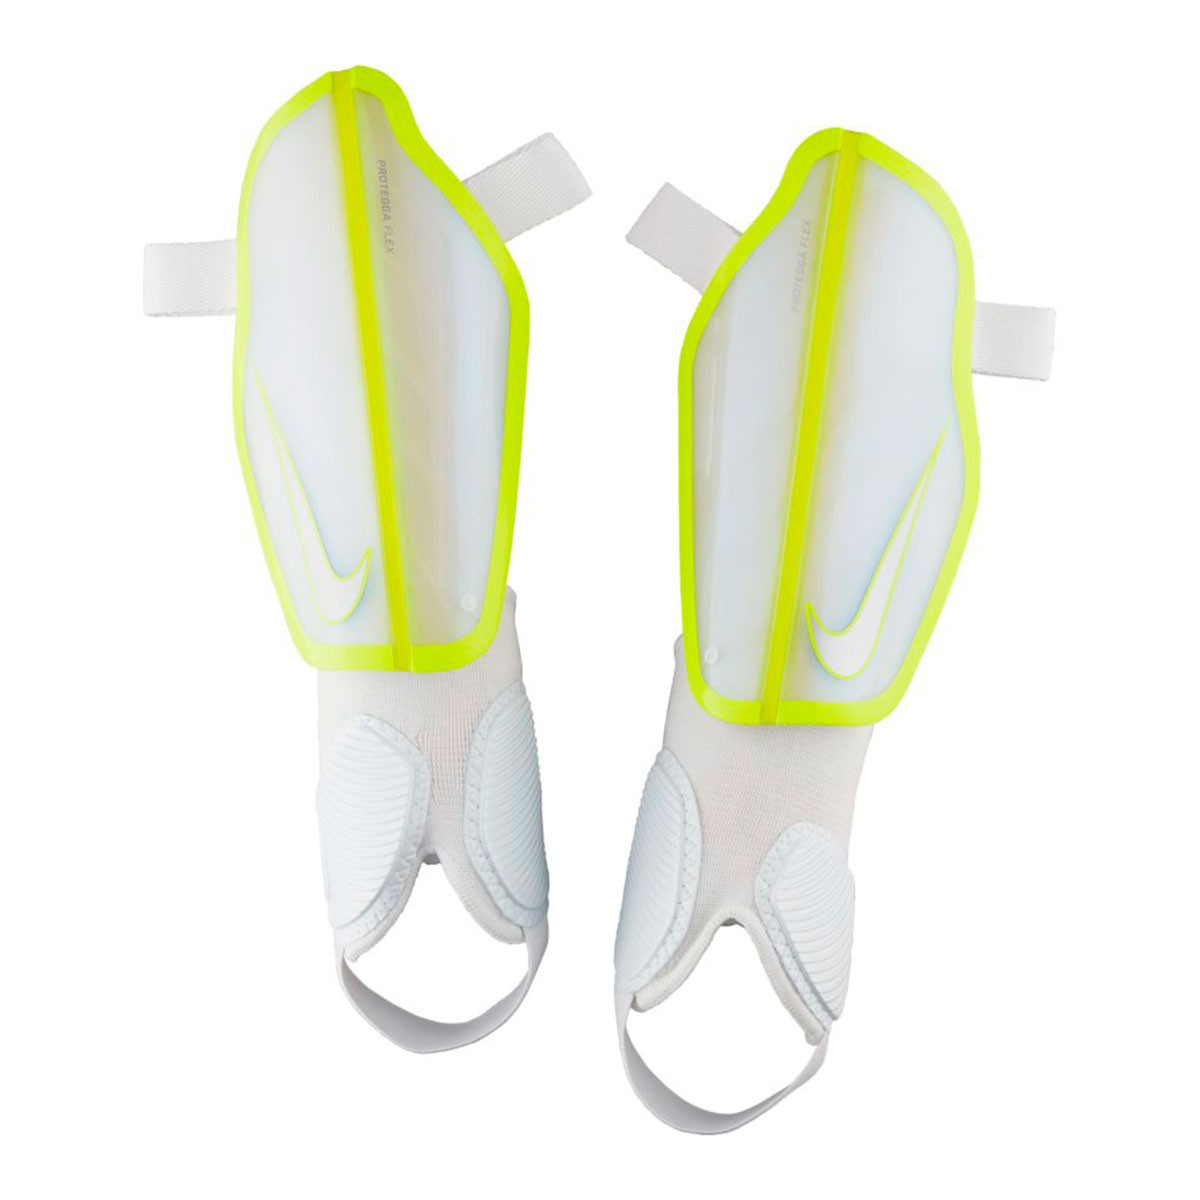 Shinpads Nike Protegga Flex White-Volt 